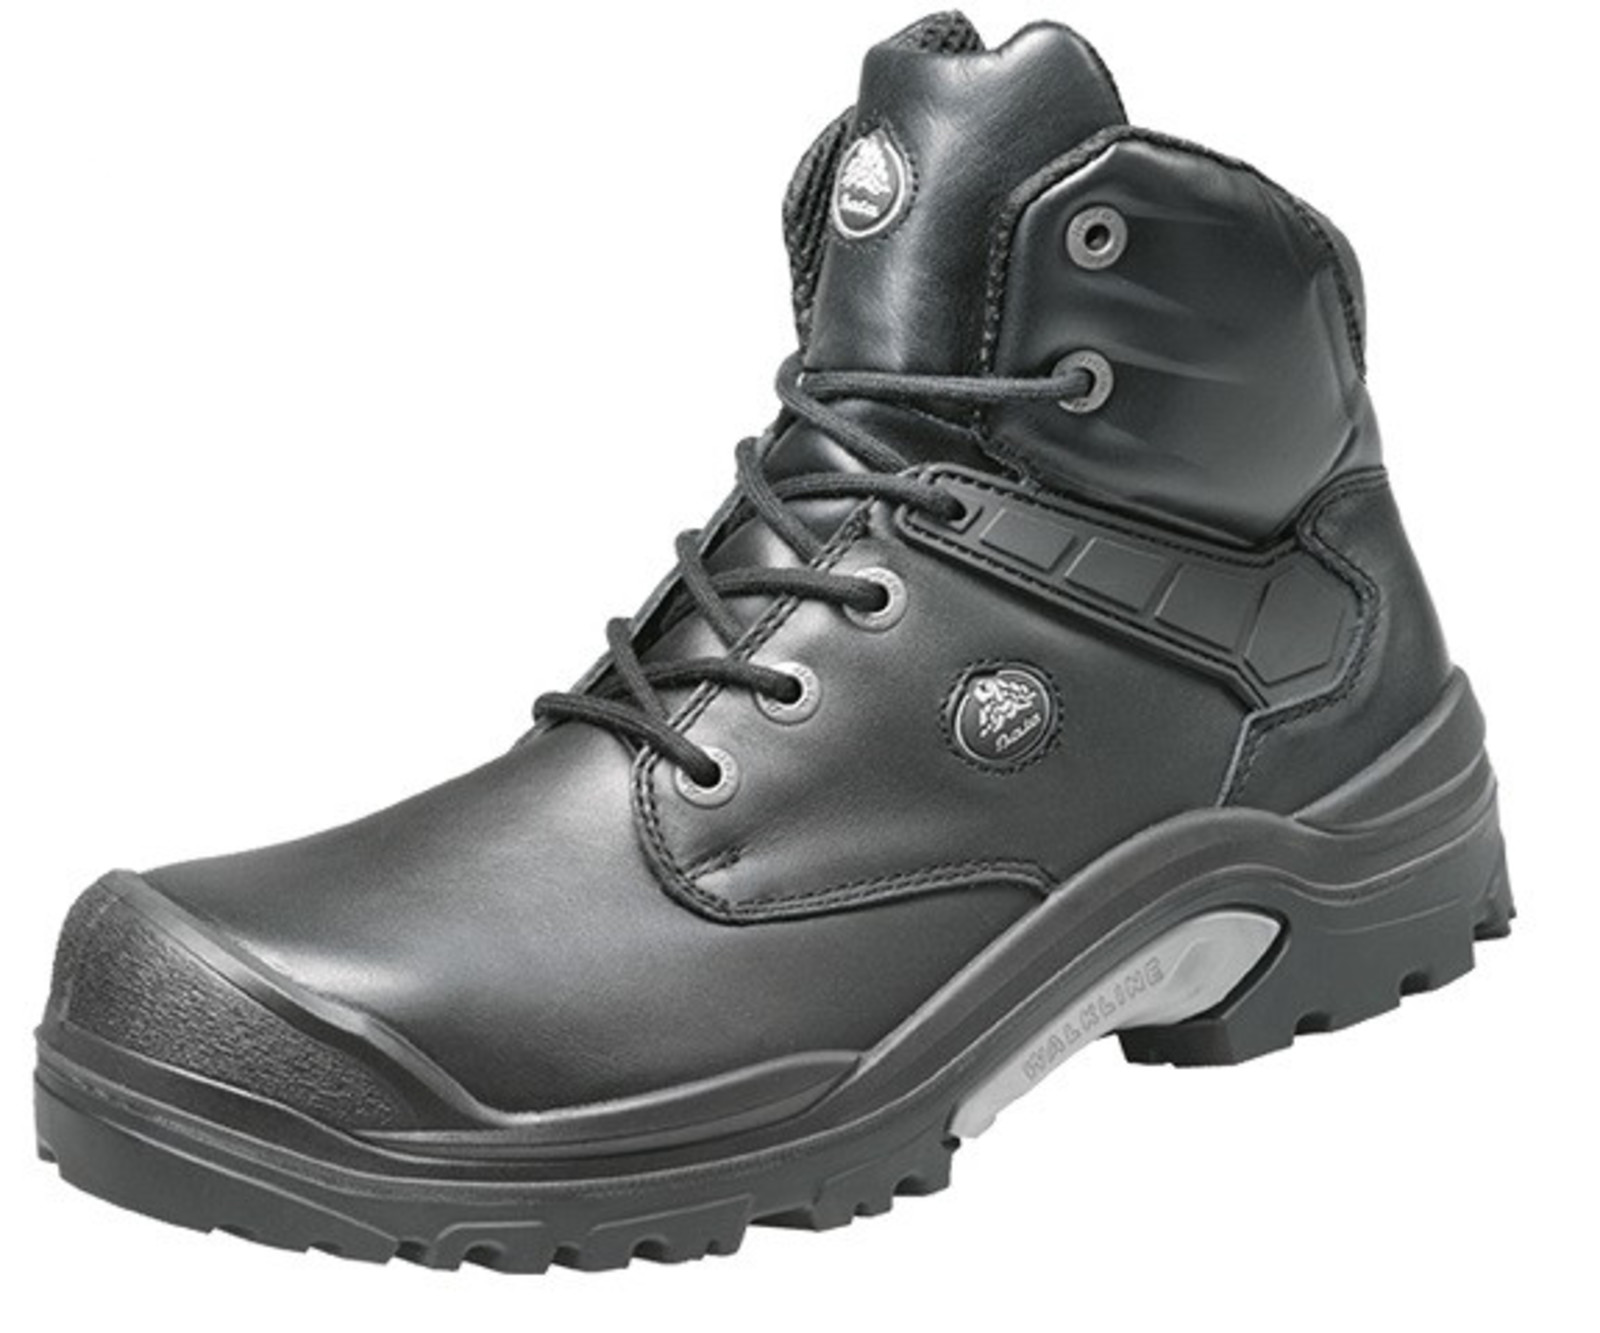 Bezpečnostná obuv Baťa PWR S3 - veľkosť: 41, farba: čierna